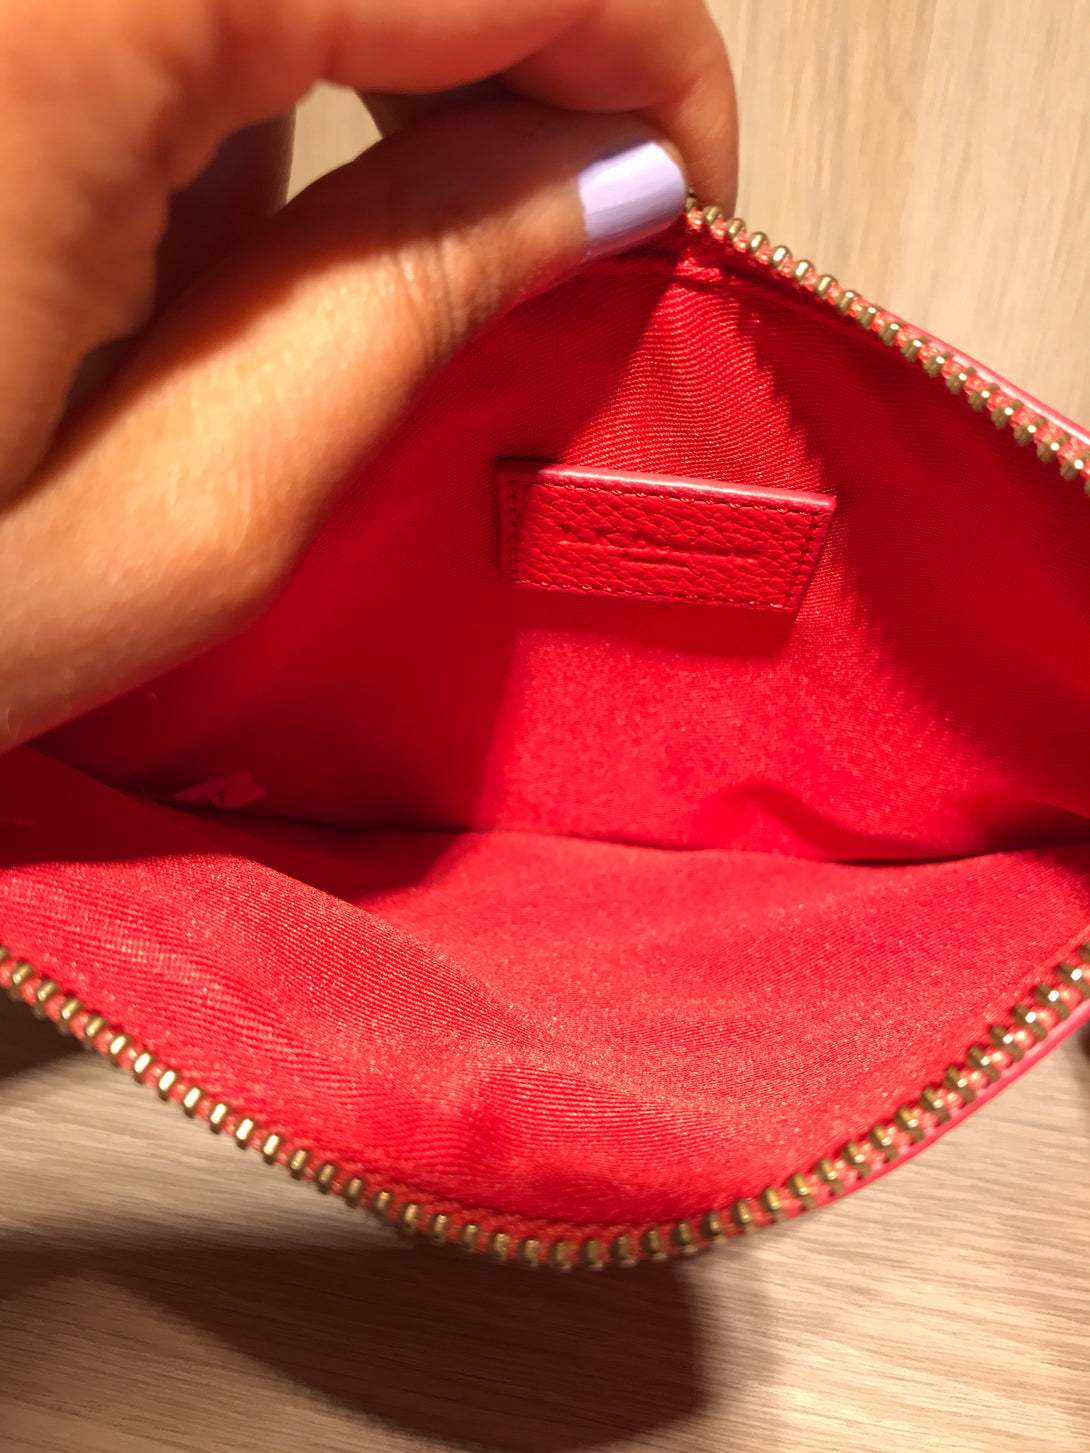 LK Bennett Red Leather Clutch - As seen on Instagram 5/08/20 - Siopaella Designer Exchange